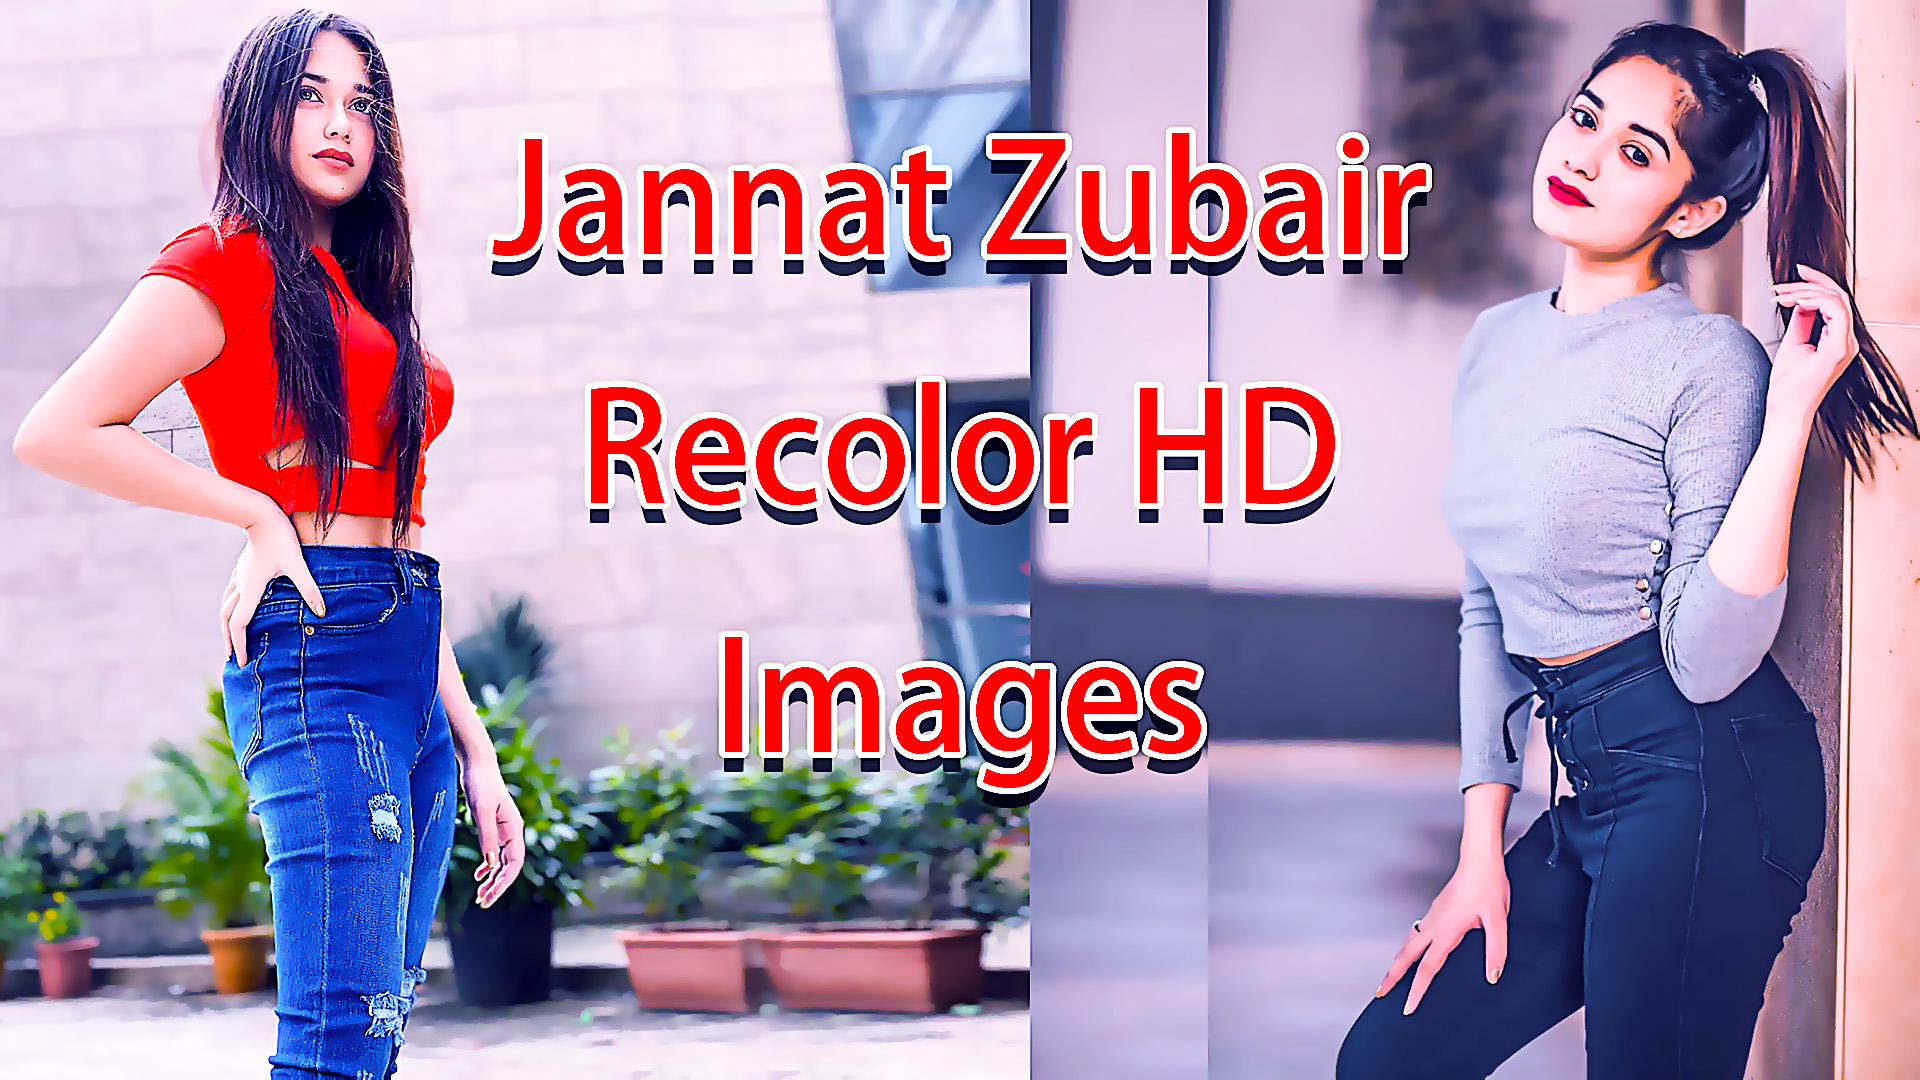 Sexy Photo Of Jannat Zubair - HD Wallpaper 